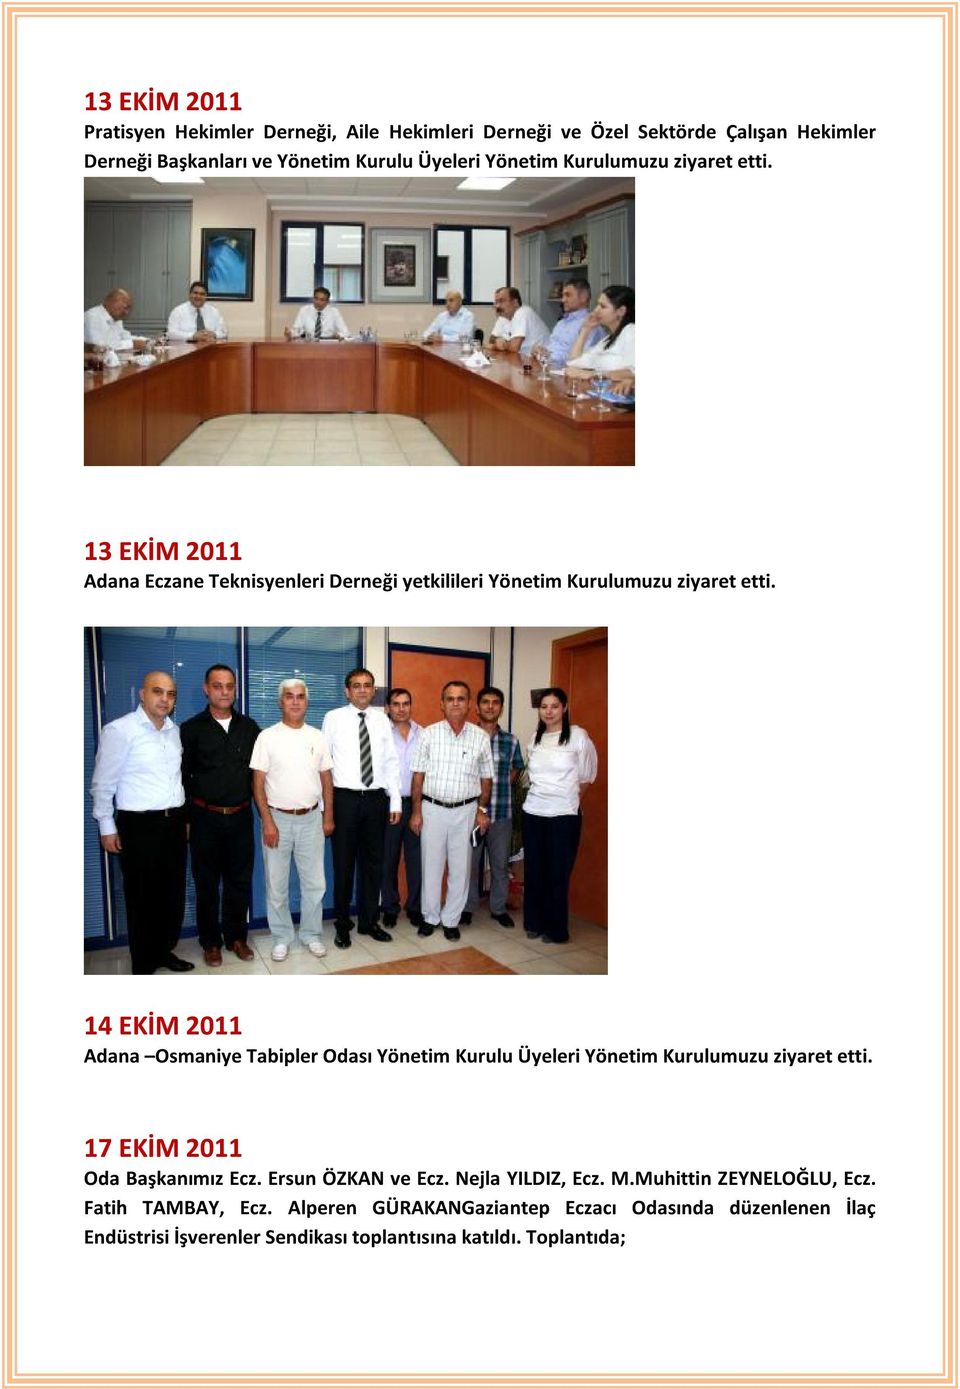 14 EKİM 2011 Adana Osmaniye Tabipler Odası Yönetim Kurulu Üyeleri Yönetim Kurulumuzu ziyaret etti. 17 EKİM 2011 Oda Başkanımız Ecz. Ersun ÖZKAN ve Ecz.